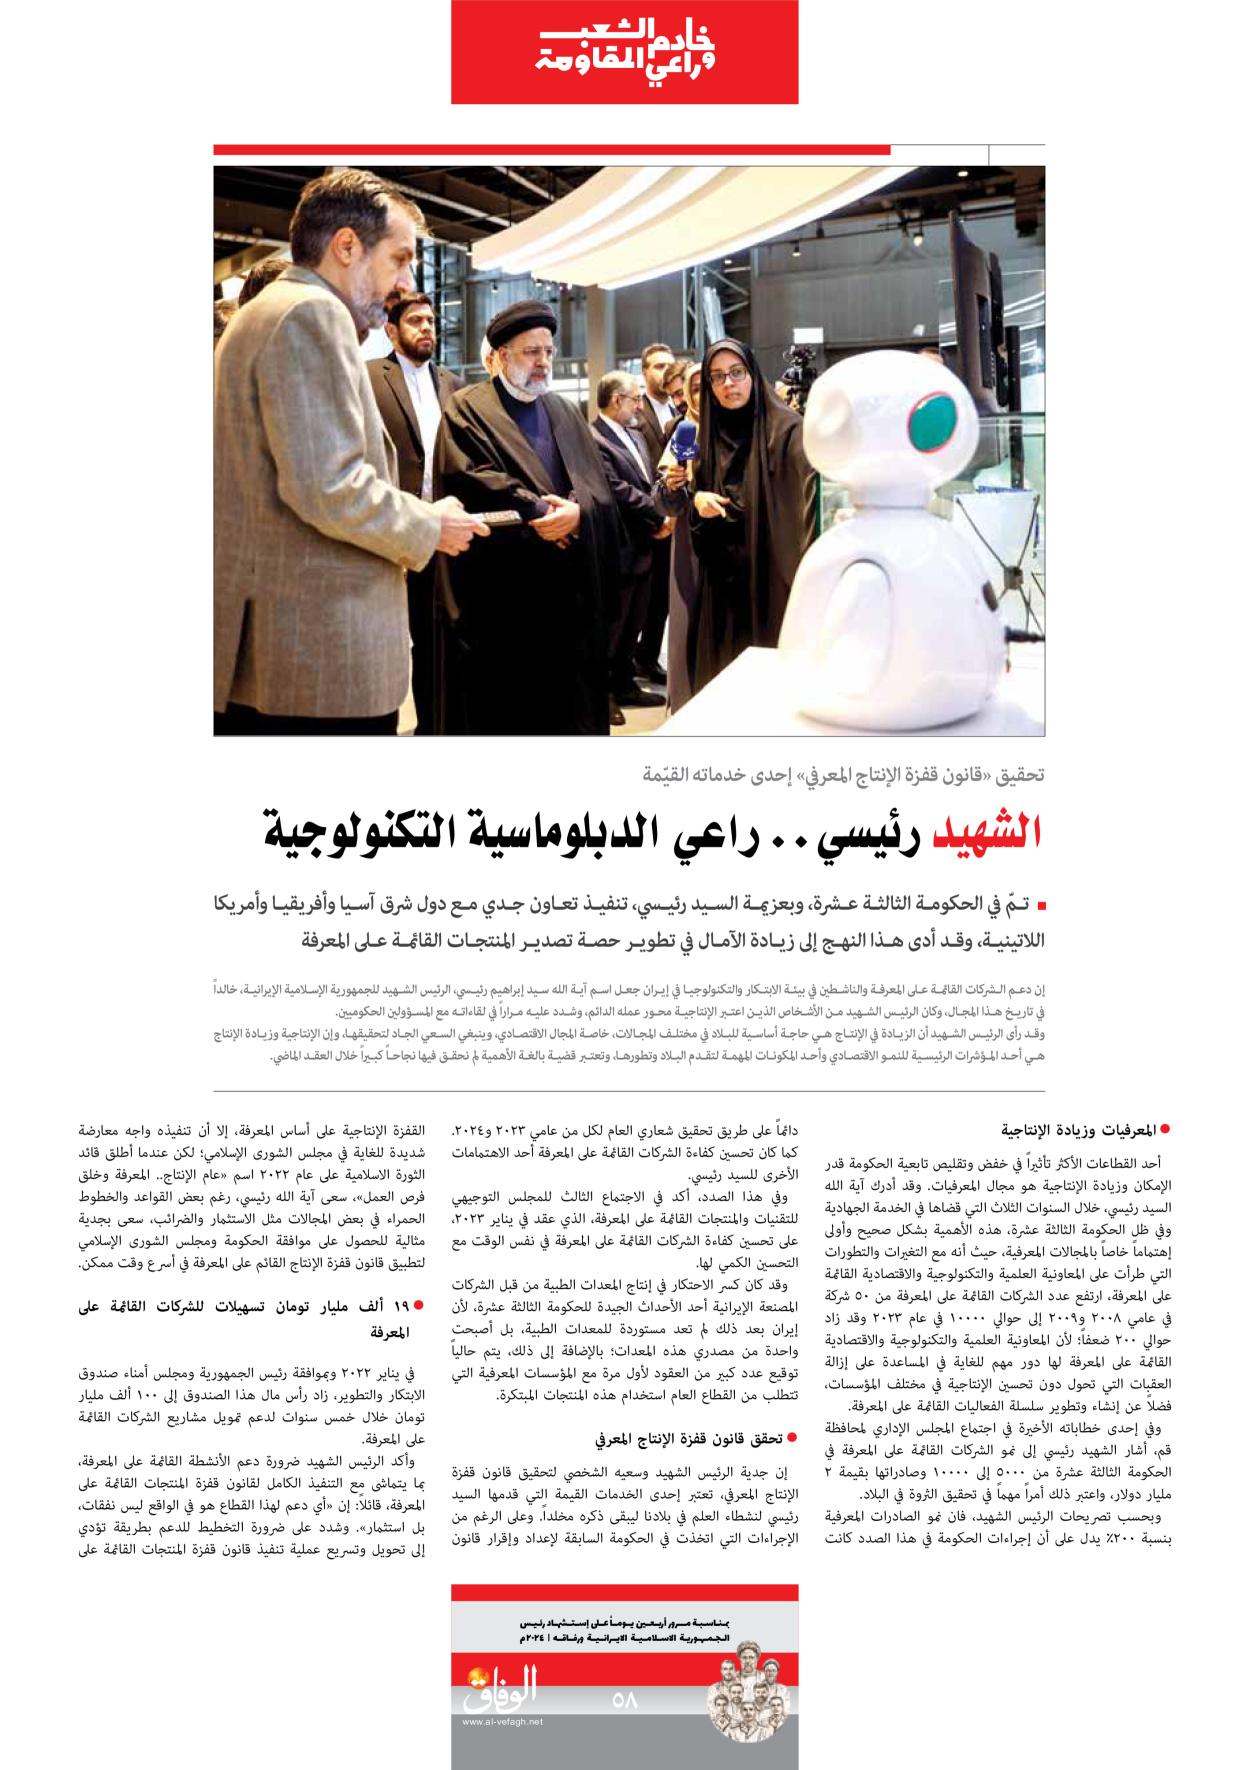 صحیفة ایران الدولیة الوفاق - ملحق ویژه نامه چهلم شهید رییسی - ٢٩ يونيو ٢٠٢٤ - الصفحة ٥۸